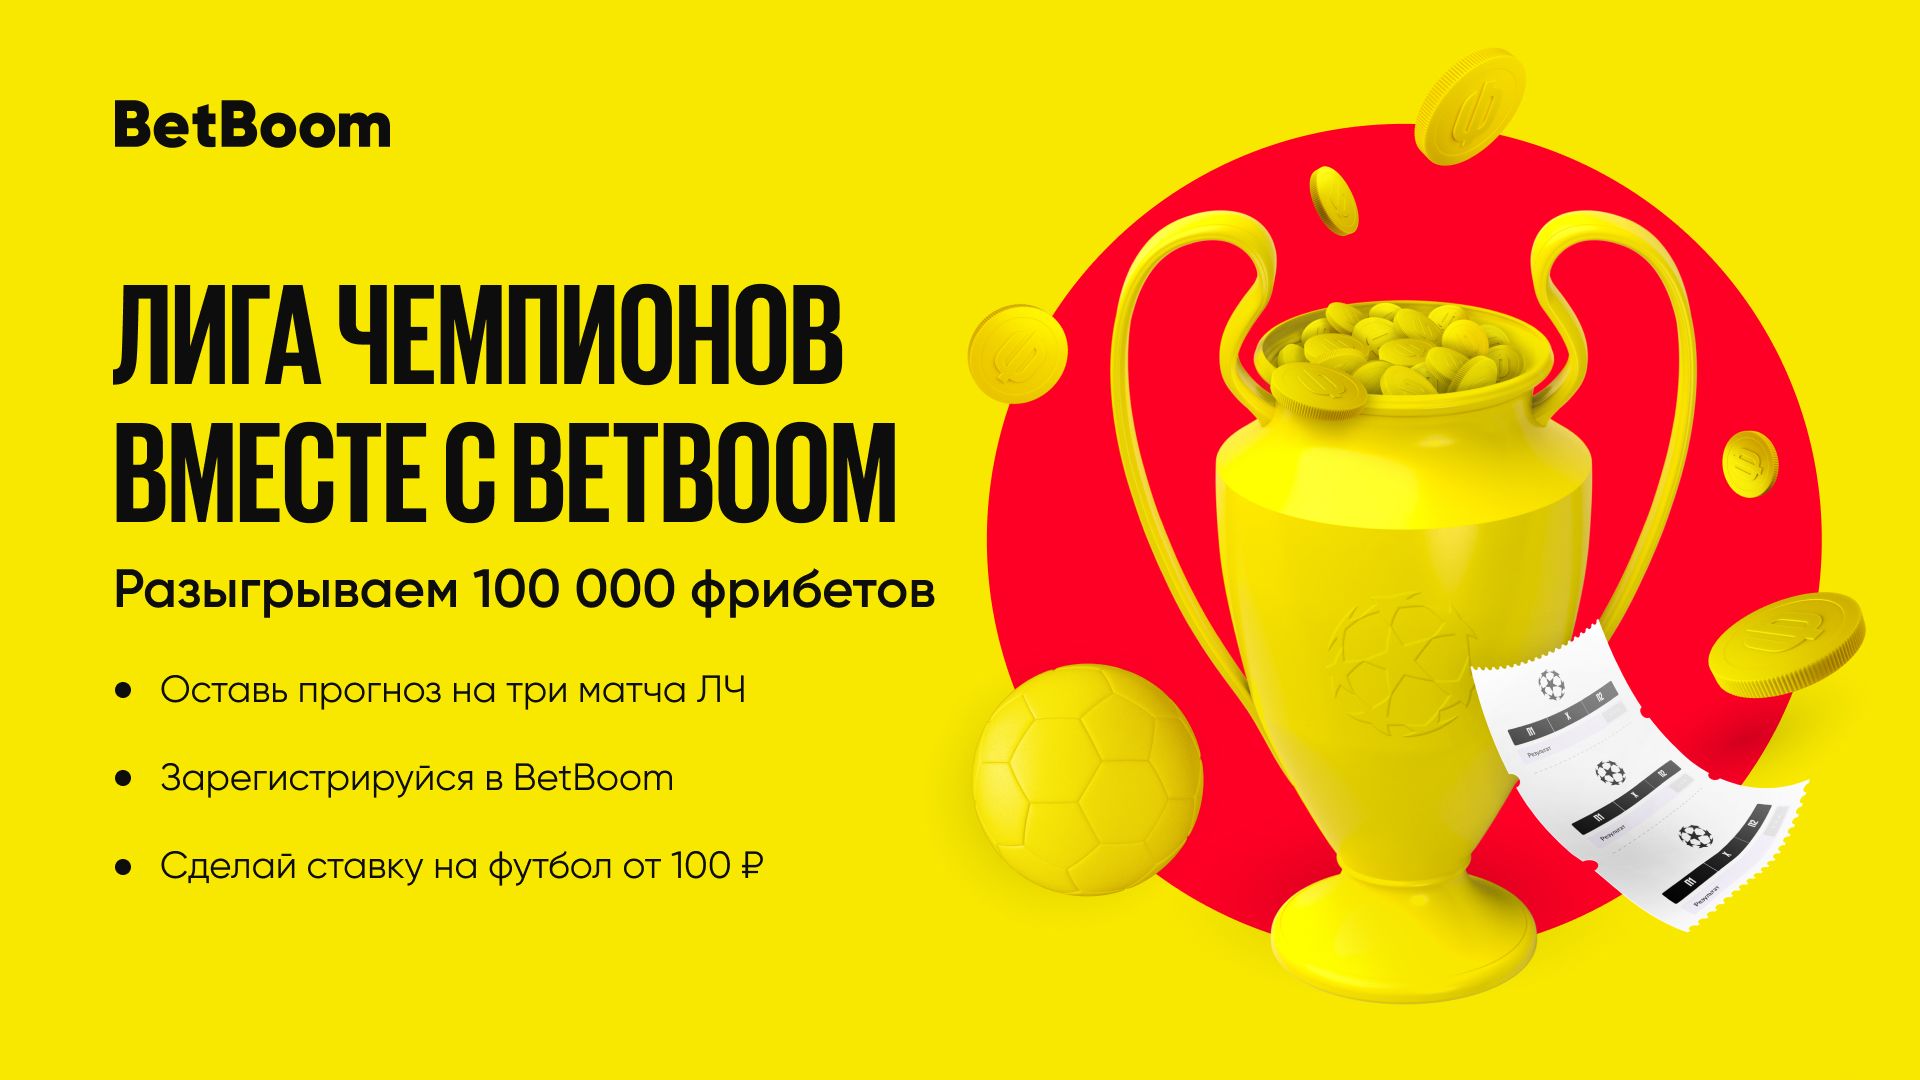 BetBoom разыграет 100 тысяч фрибетов на матчах пятого тура Лиги чемпионов